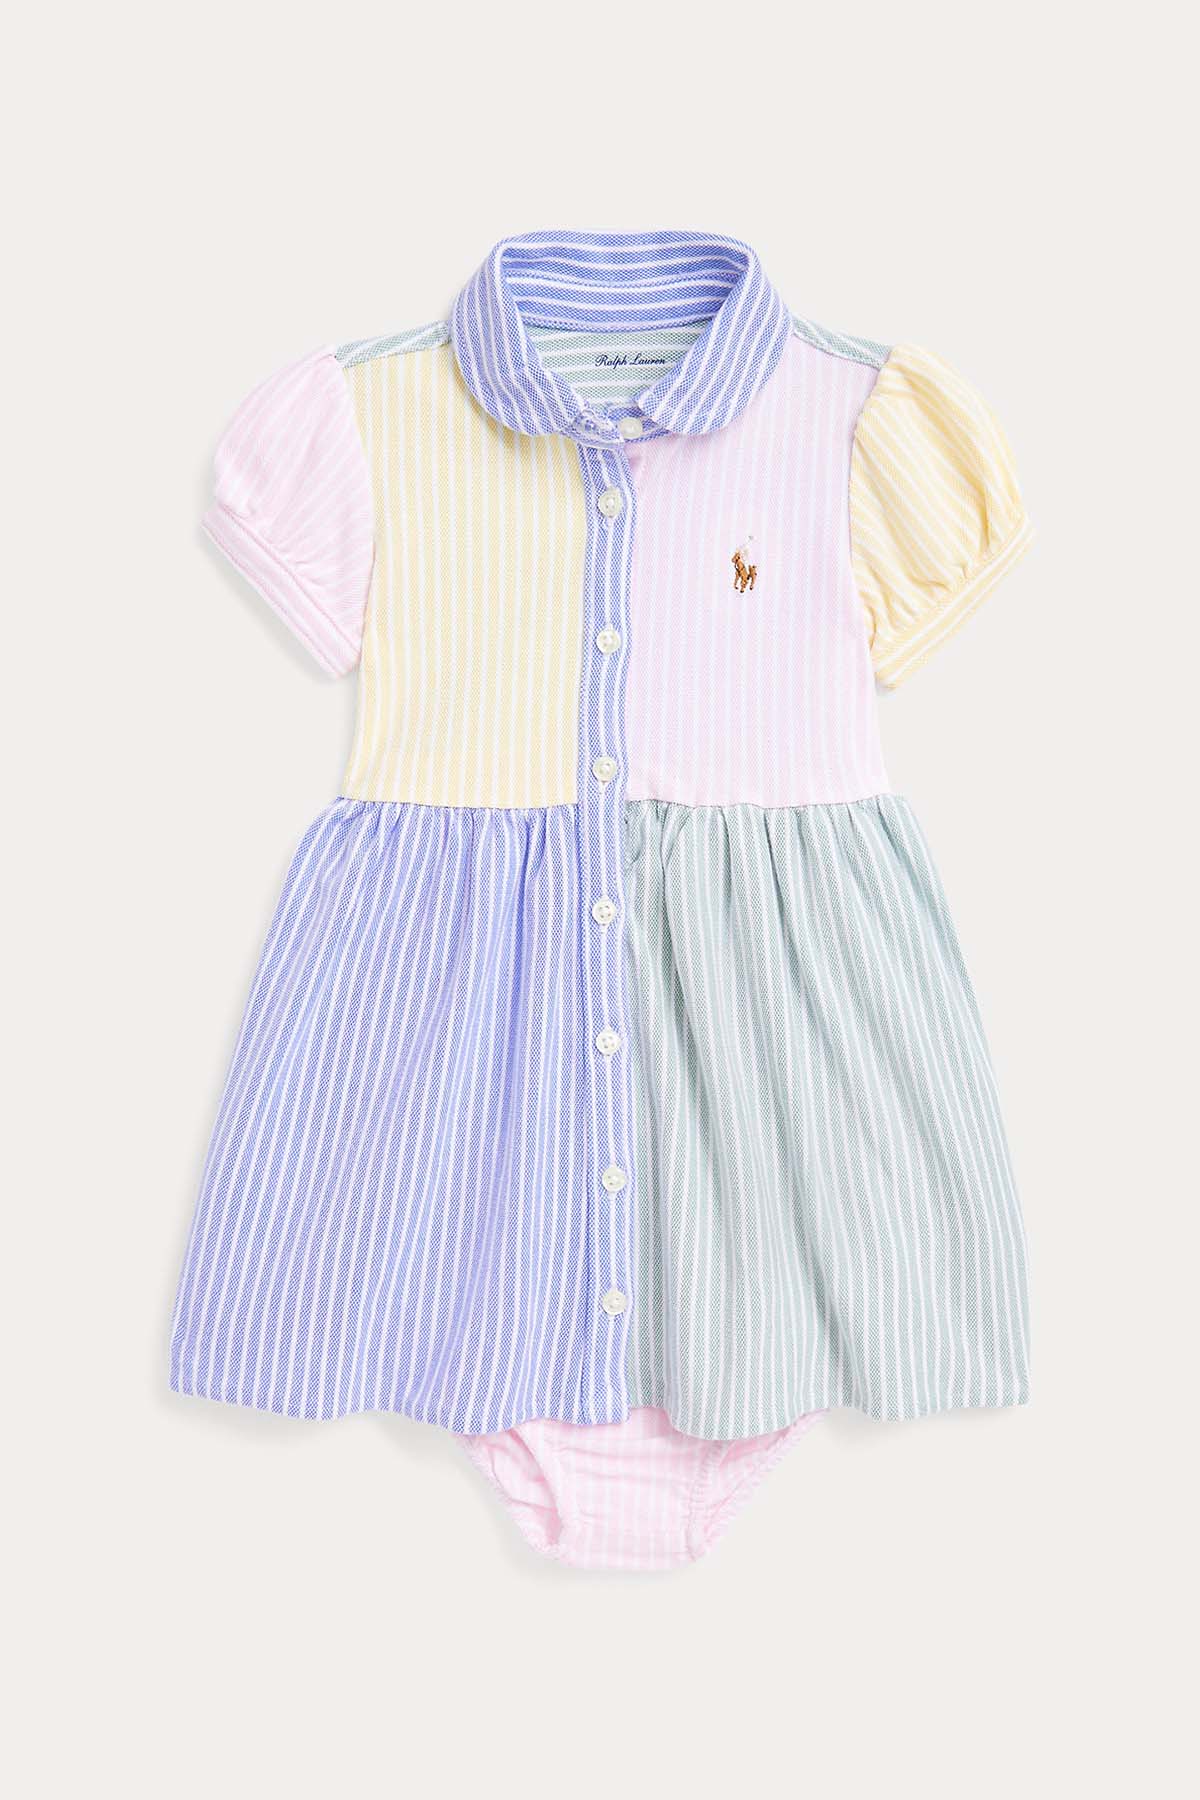 Polo Ralph Lauren Kids 9-18 Aylık Kız Bebek Gömlek Elbise